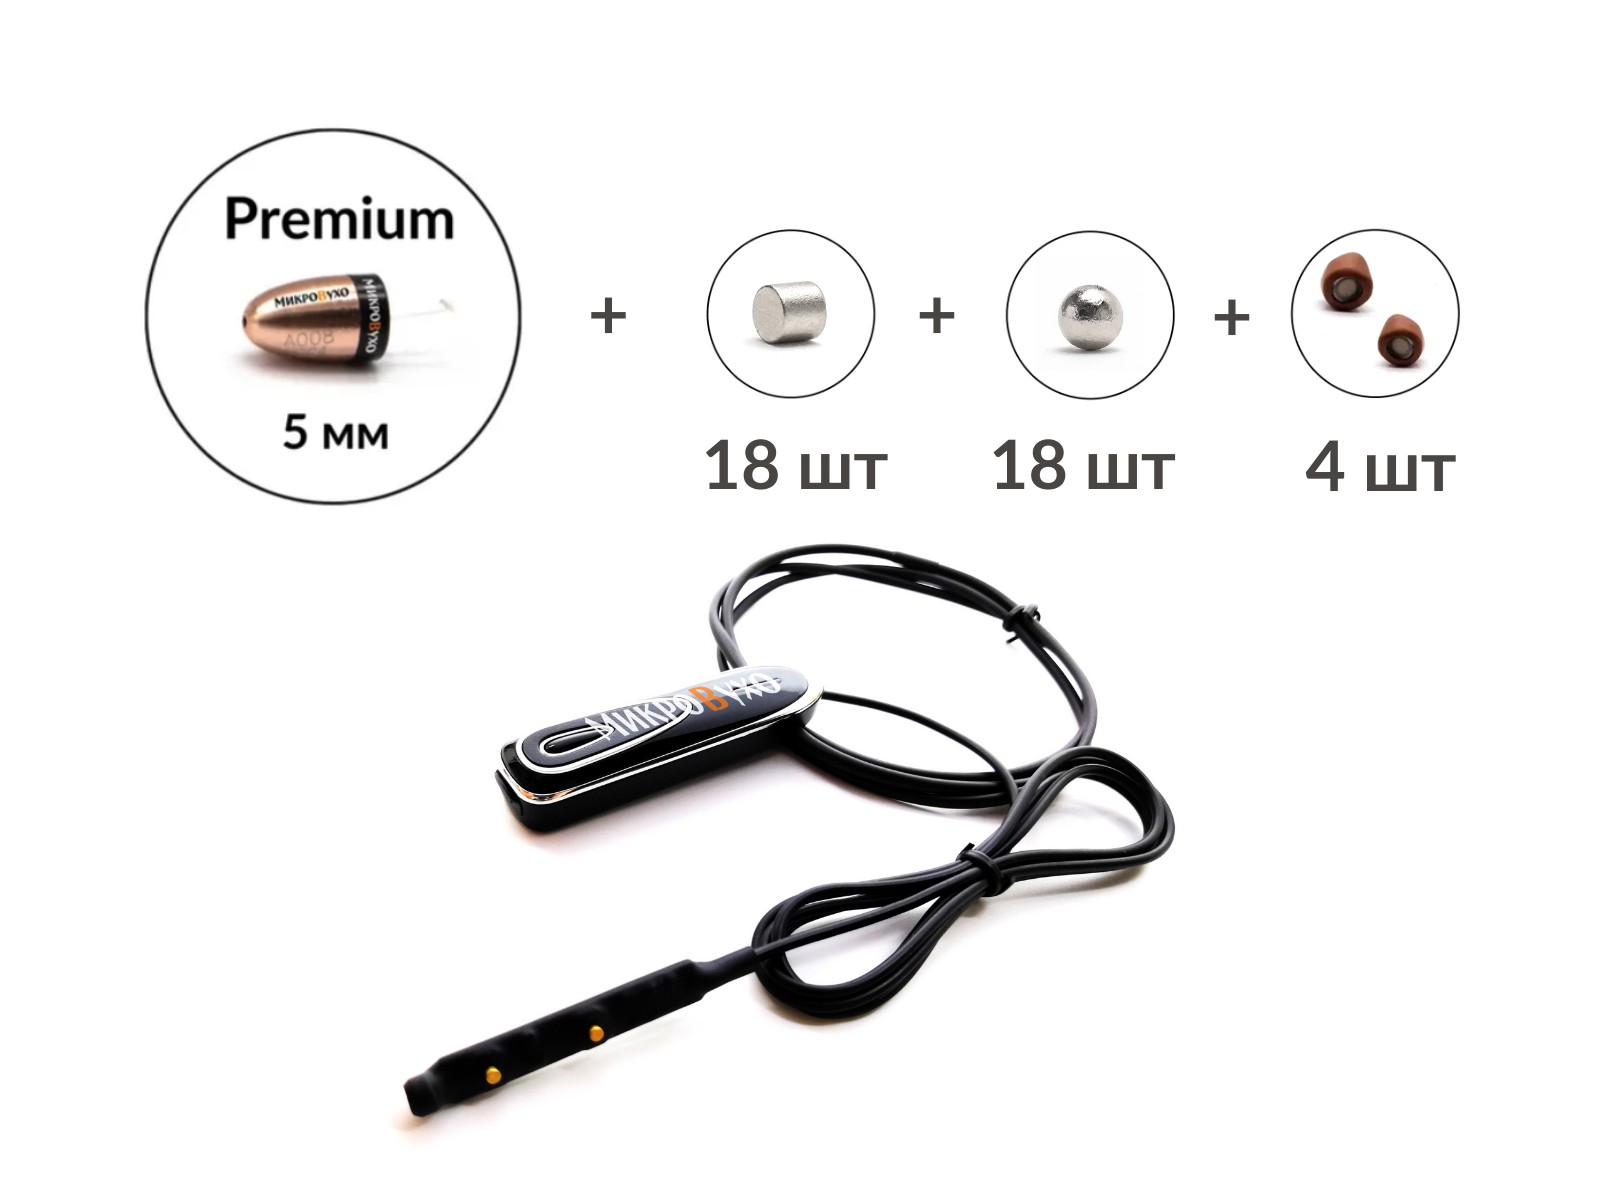 Универсальная гарнитура Bluetooth Premier с капсулой Premium и магнитами 2 мм - изображение 16